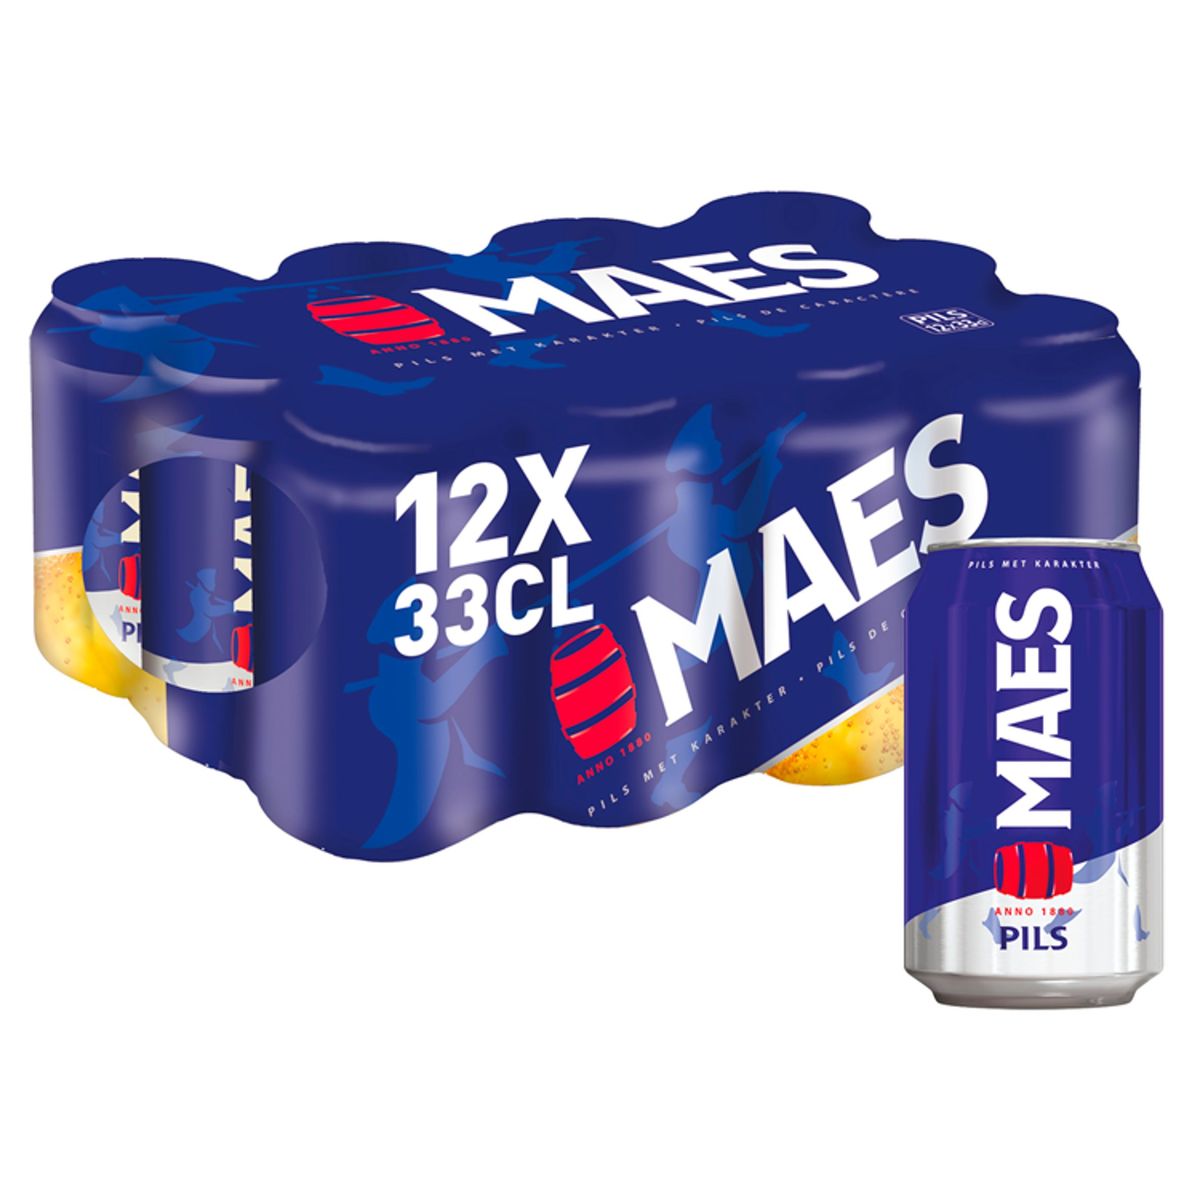 Maes Blond bier Pils 5.2% ALC 12 x 33 cl Blik